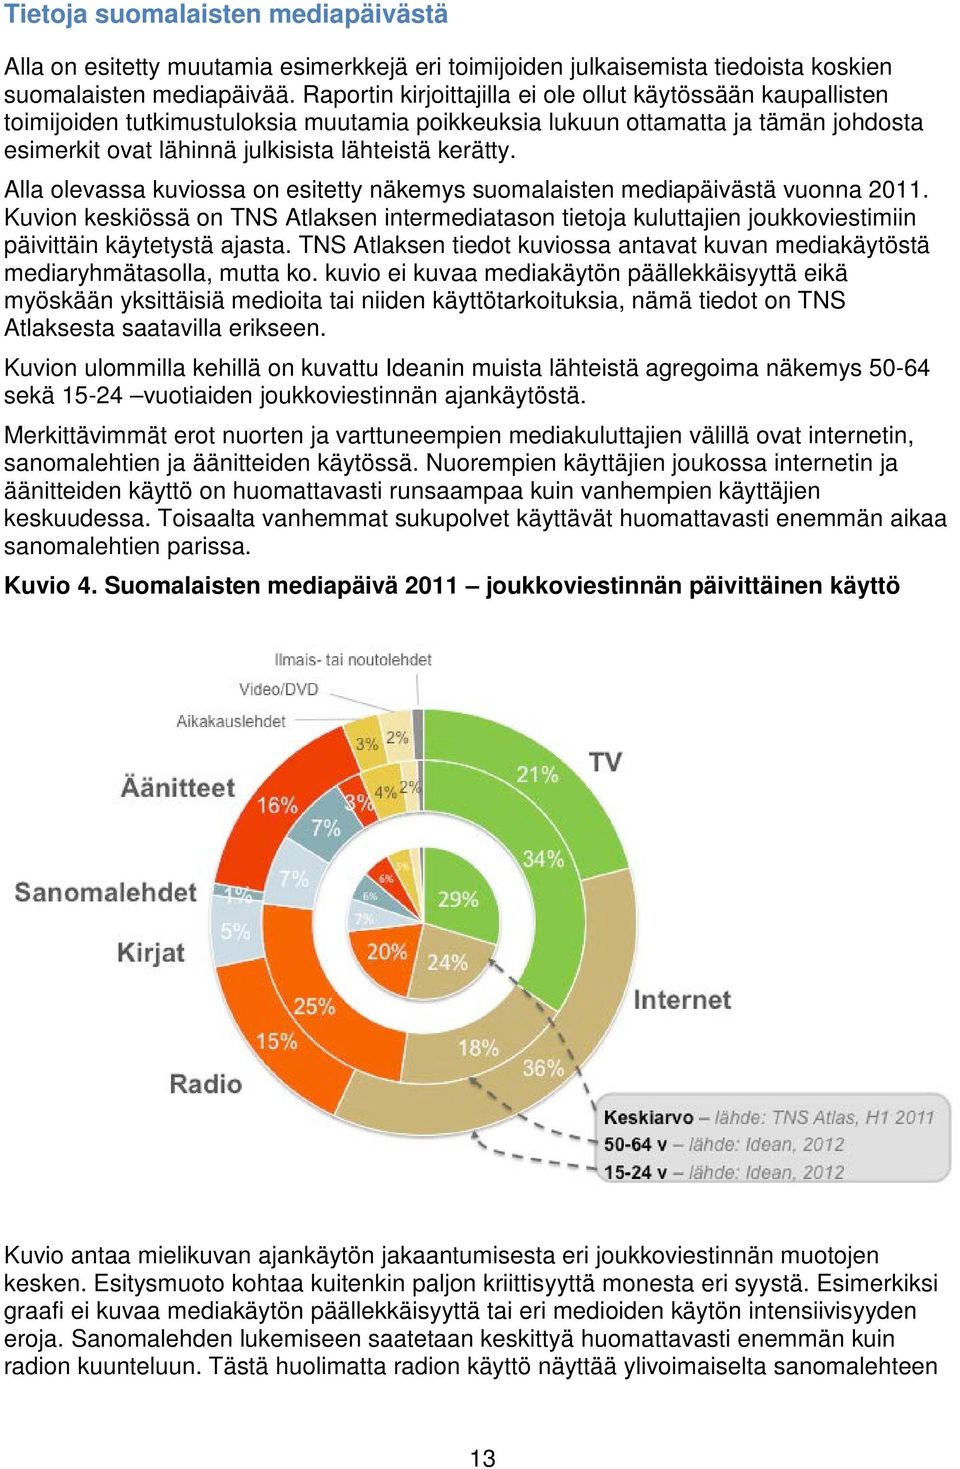 Alla olevassa kuviossa on esitetty näkemys suomalaisten mediapäivästä vuonna 2011. Kuvion keskiössä on TNS Atlaksen intermediatason tietoja kuluttajien joukkoviestimiin päivittäin käytetystä ajasta.